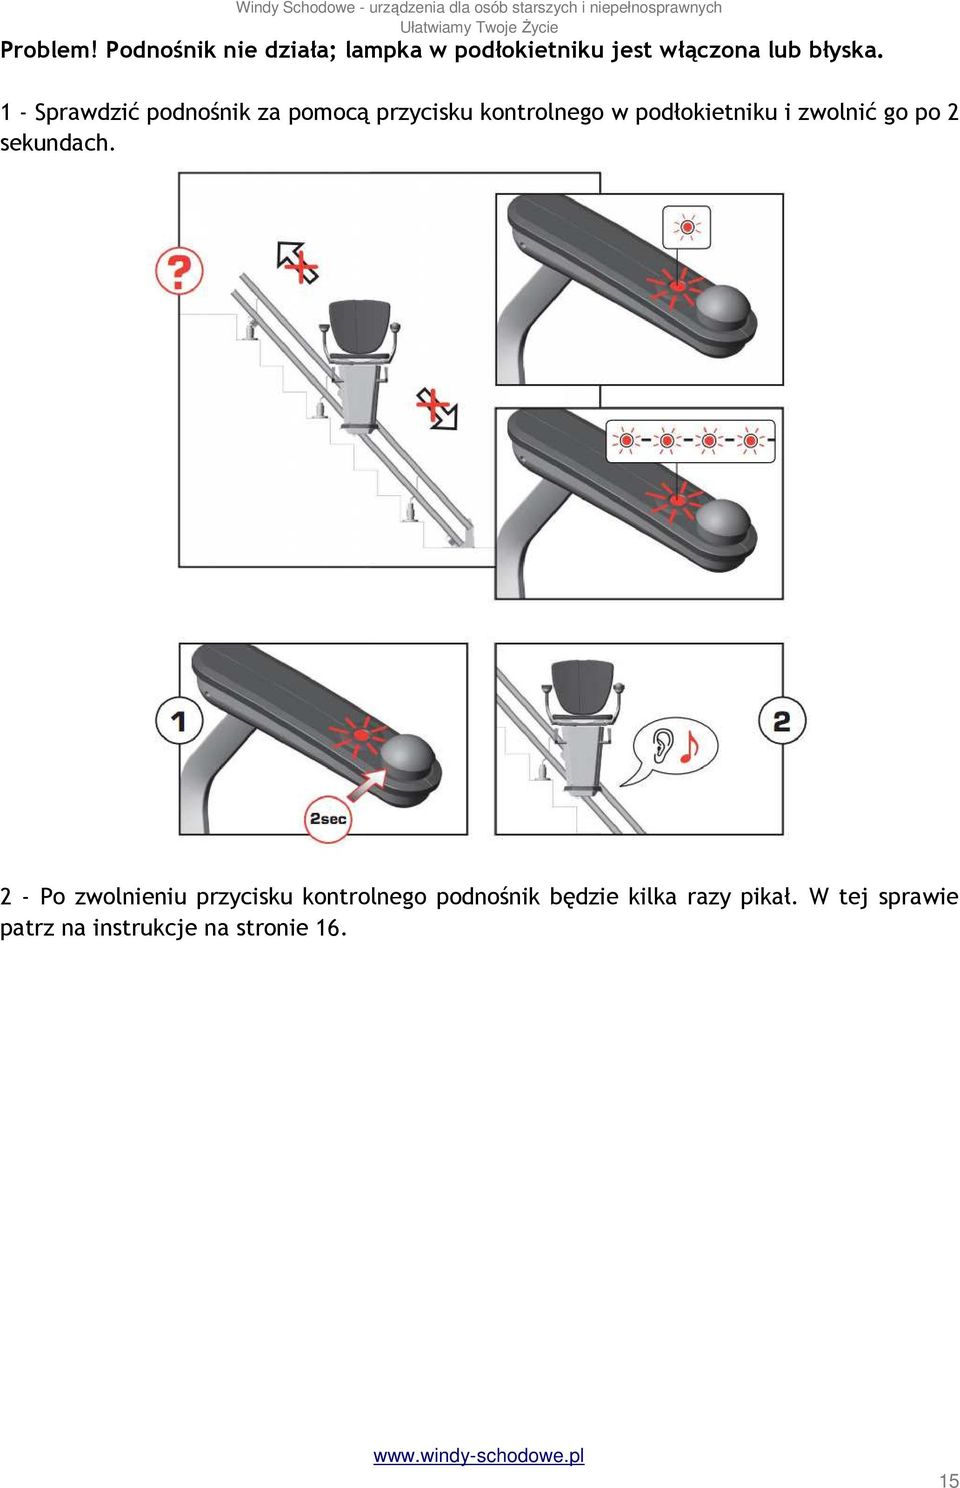 1 - Sprawdzić podnośnik za pomocą przycisku kontrolnego w podłokietniku i